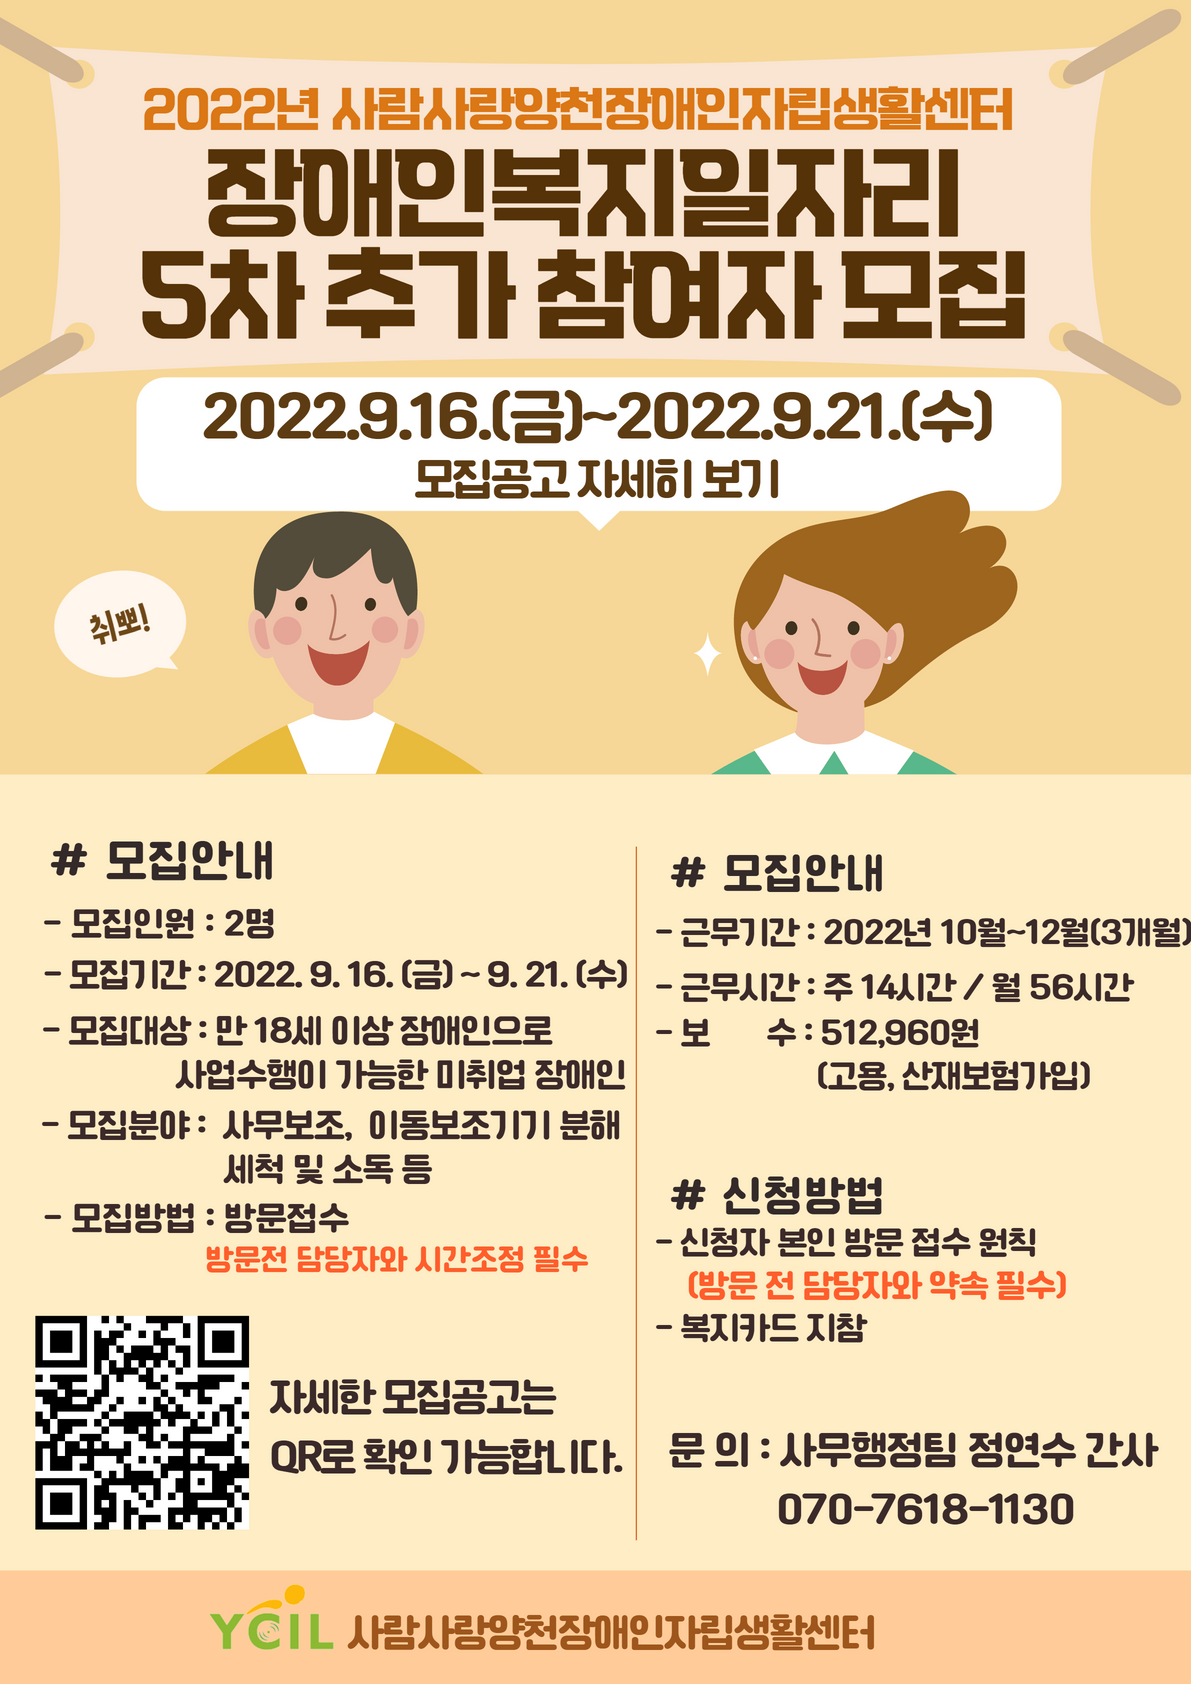 2022년 복지일자리 5차 추가모집홍보 (1).png